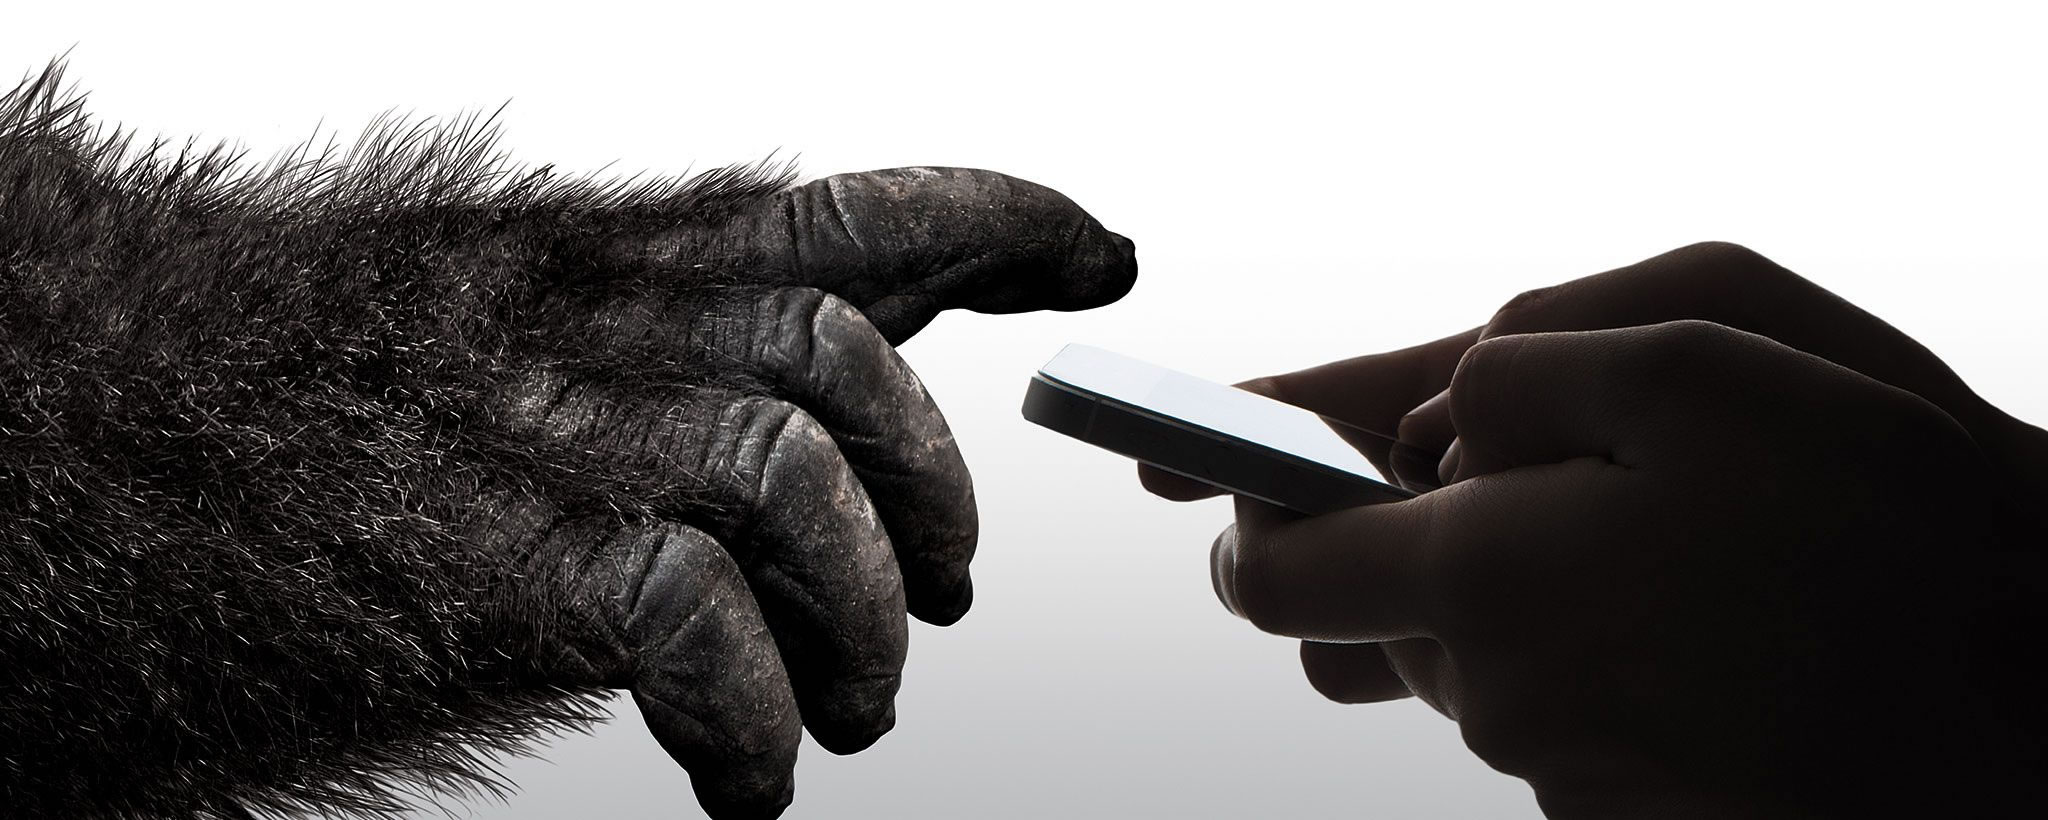 Gorilla Glass 6 kullanan ilk akıllı telefonu Oppo üretecek